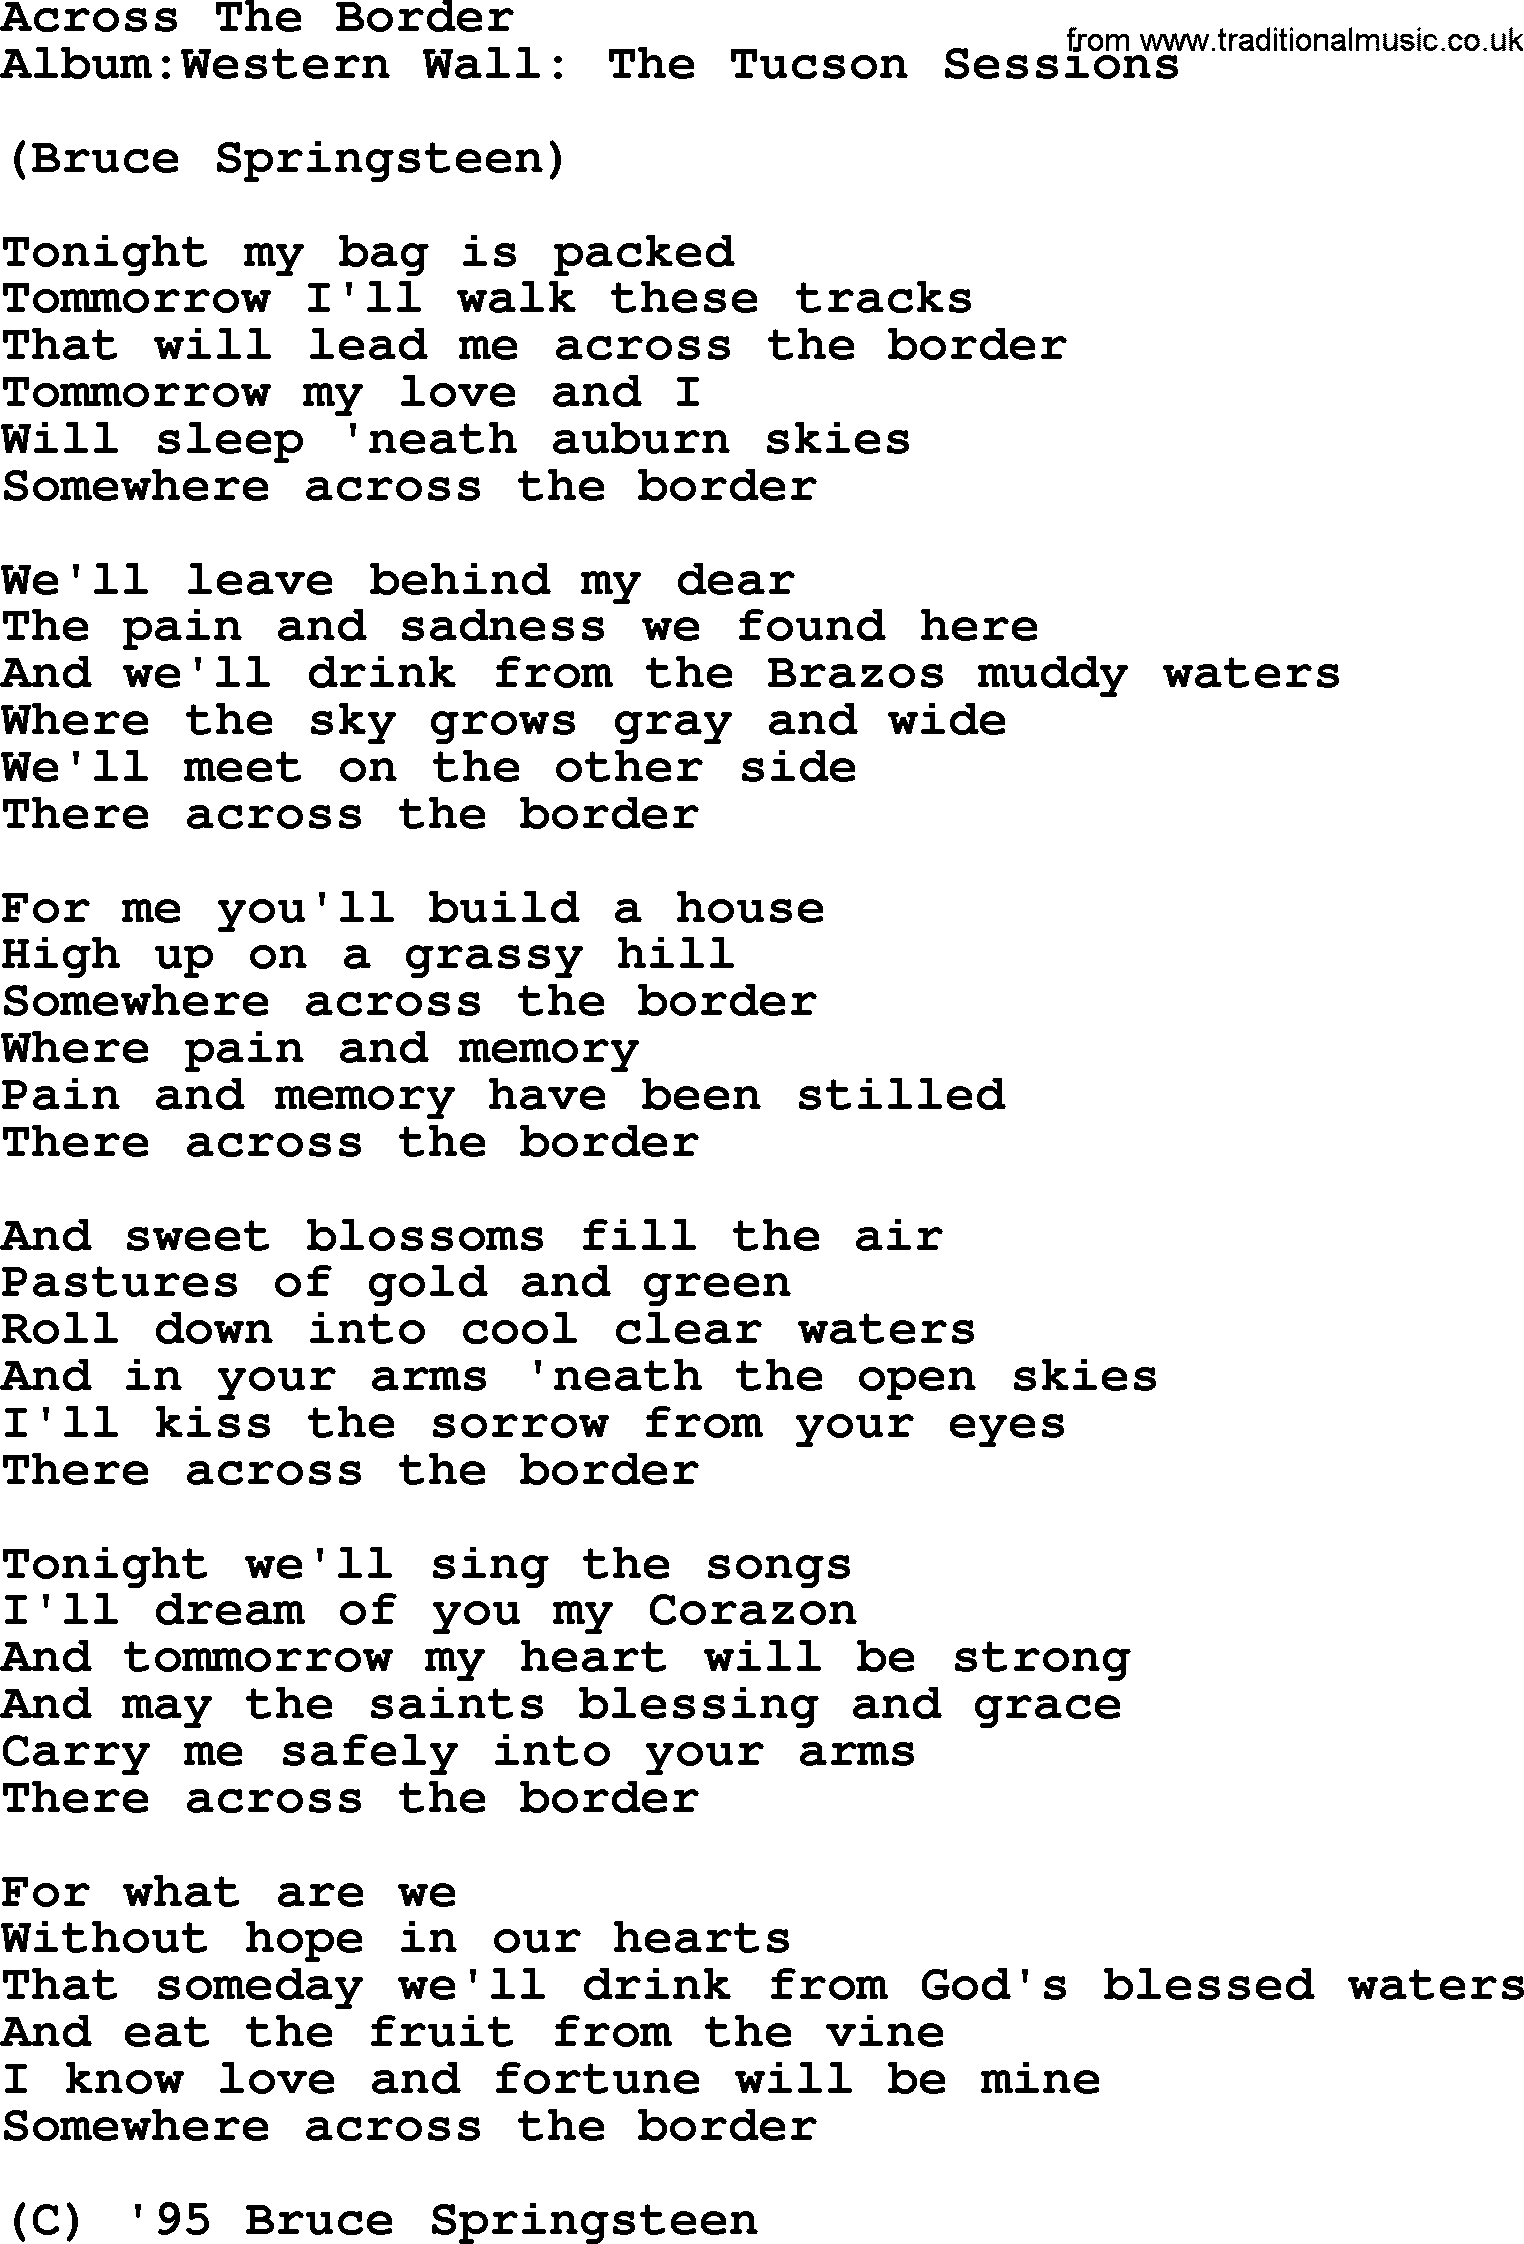 Emmylou Harris song: Across The Border lyrics